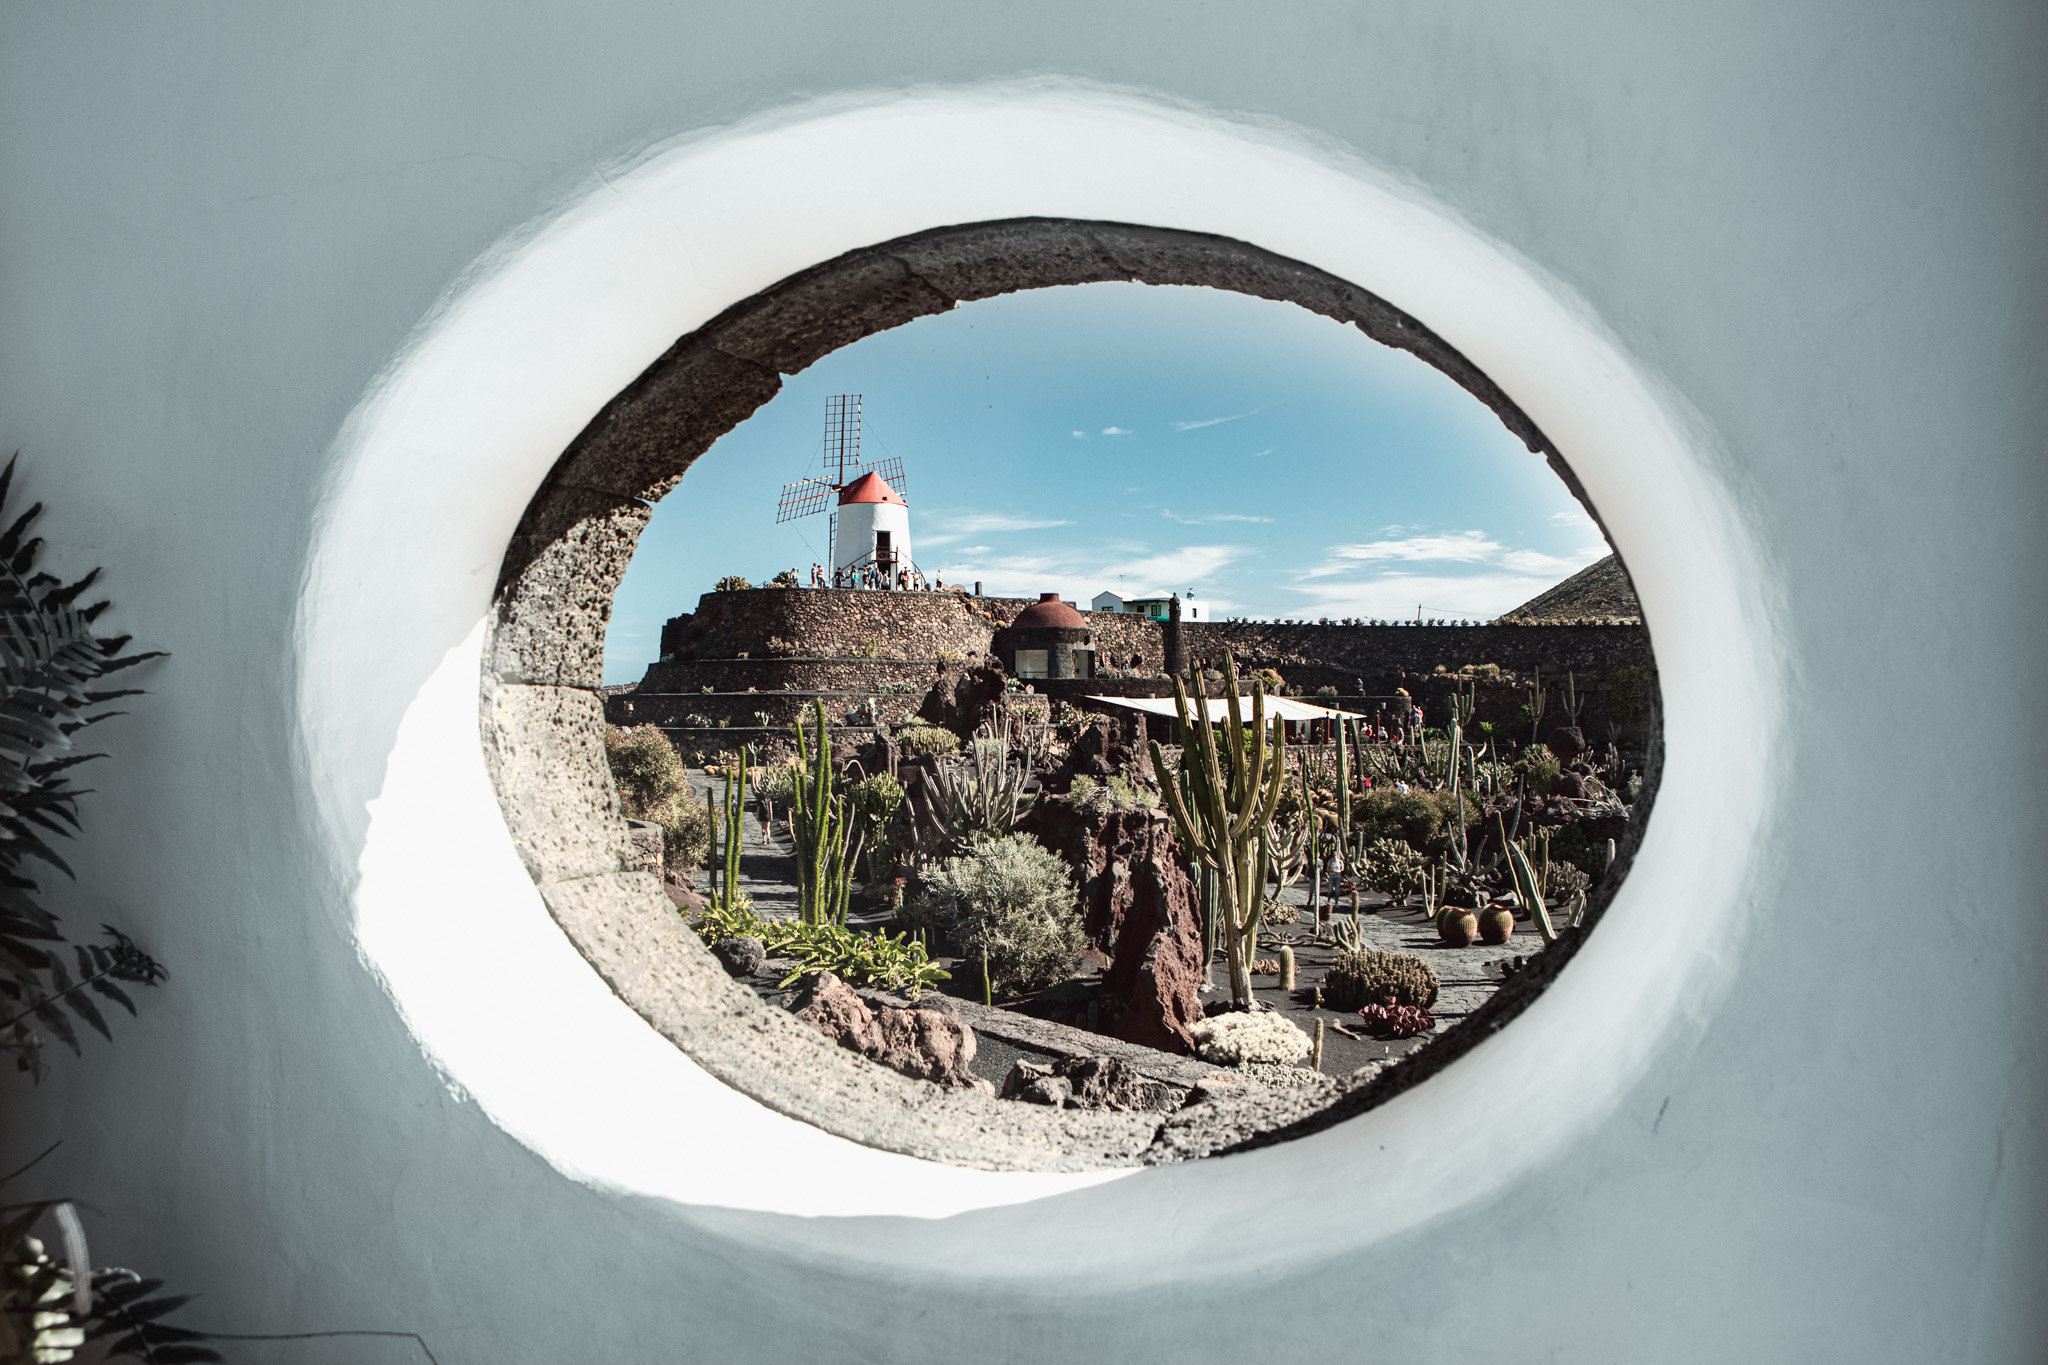 Vue du jardin de cactus créé par Cesar Manrique depuis l'intérieur du musée à Lanzarote